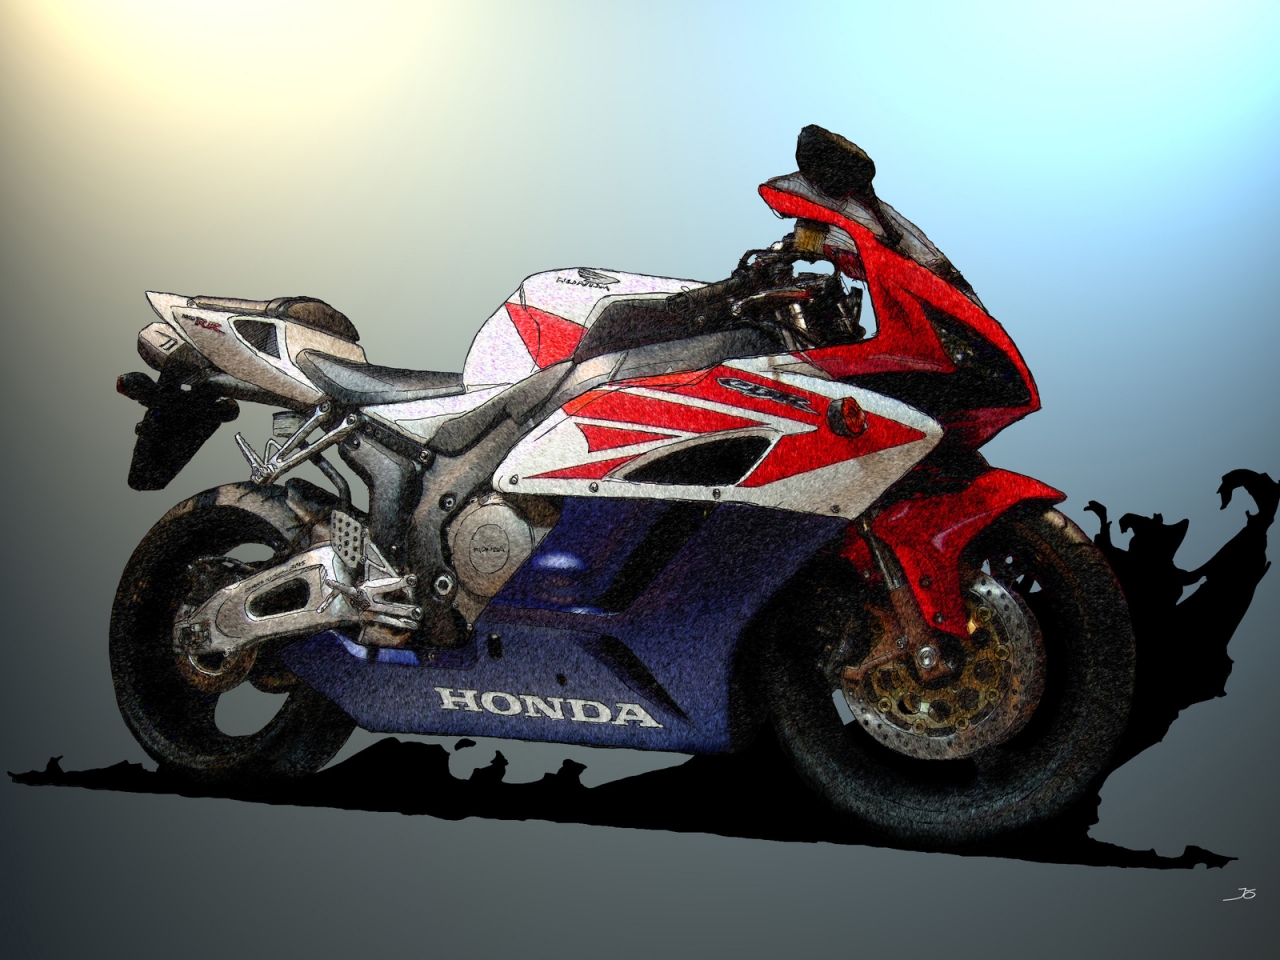 Honda CBR Sketch for 1280 x 960 resolution